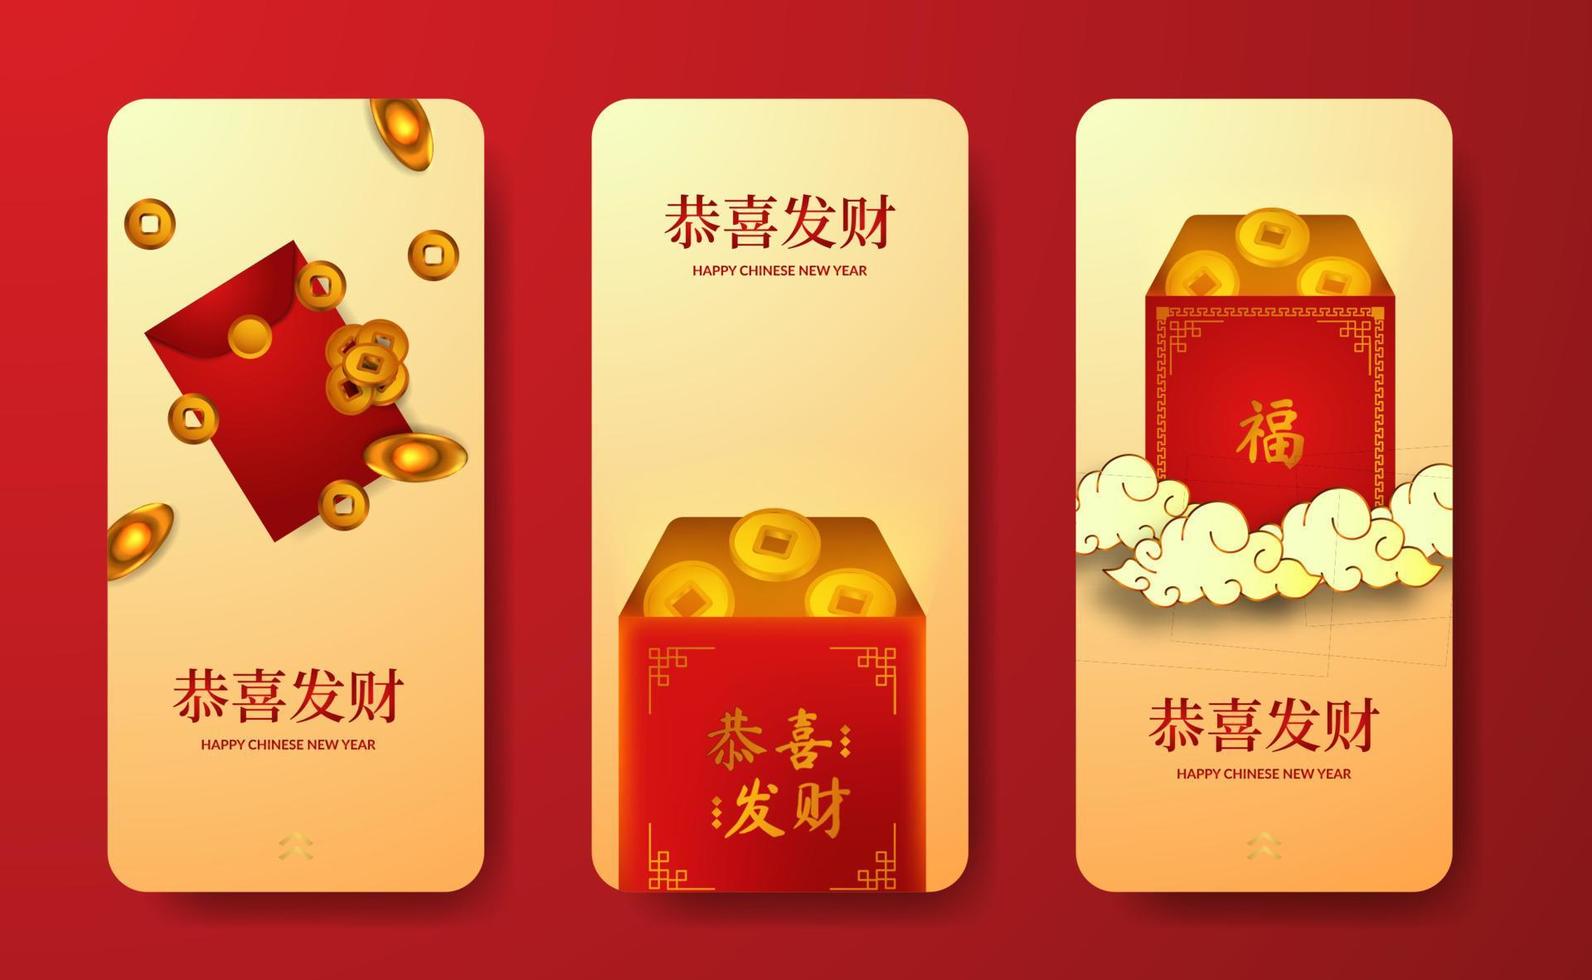 sobre rojo regalo de bolsillo riqueza buena fortuna afortunado para el año nuevo chino plantilla de historias de redes sociales vector